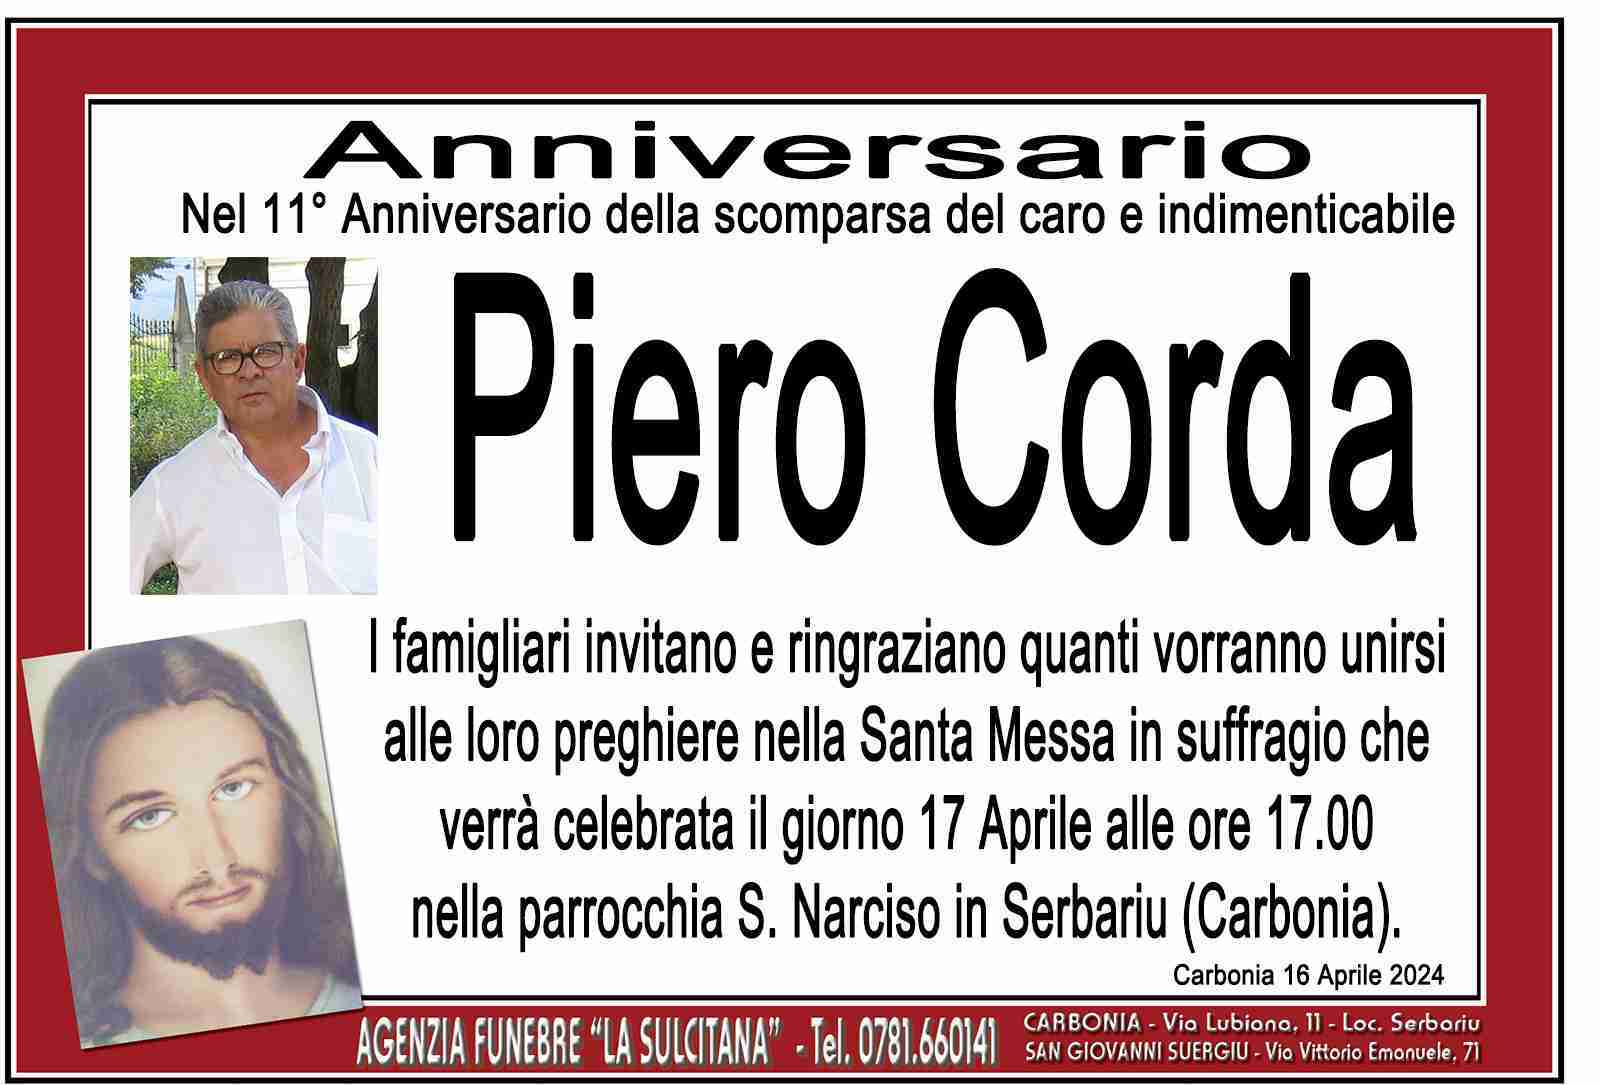 Piero Corda